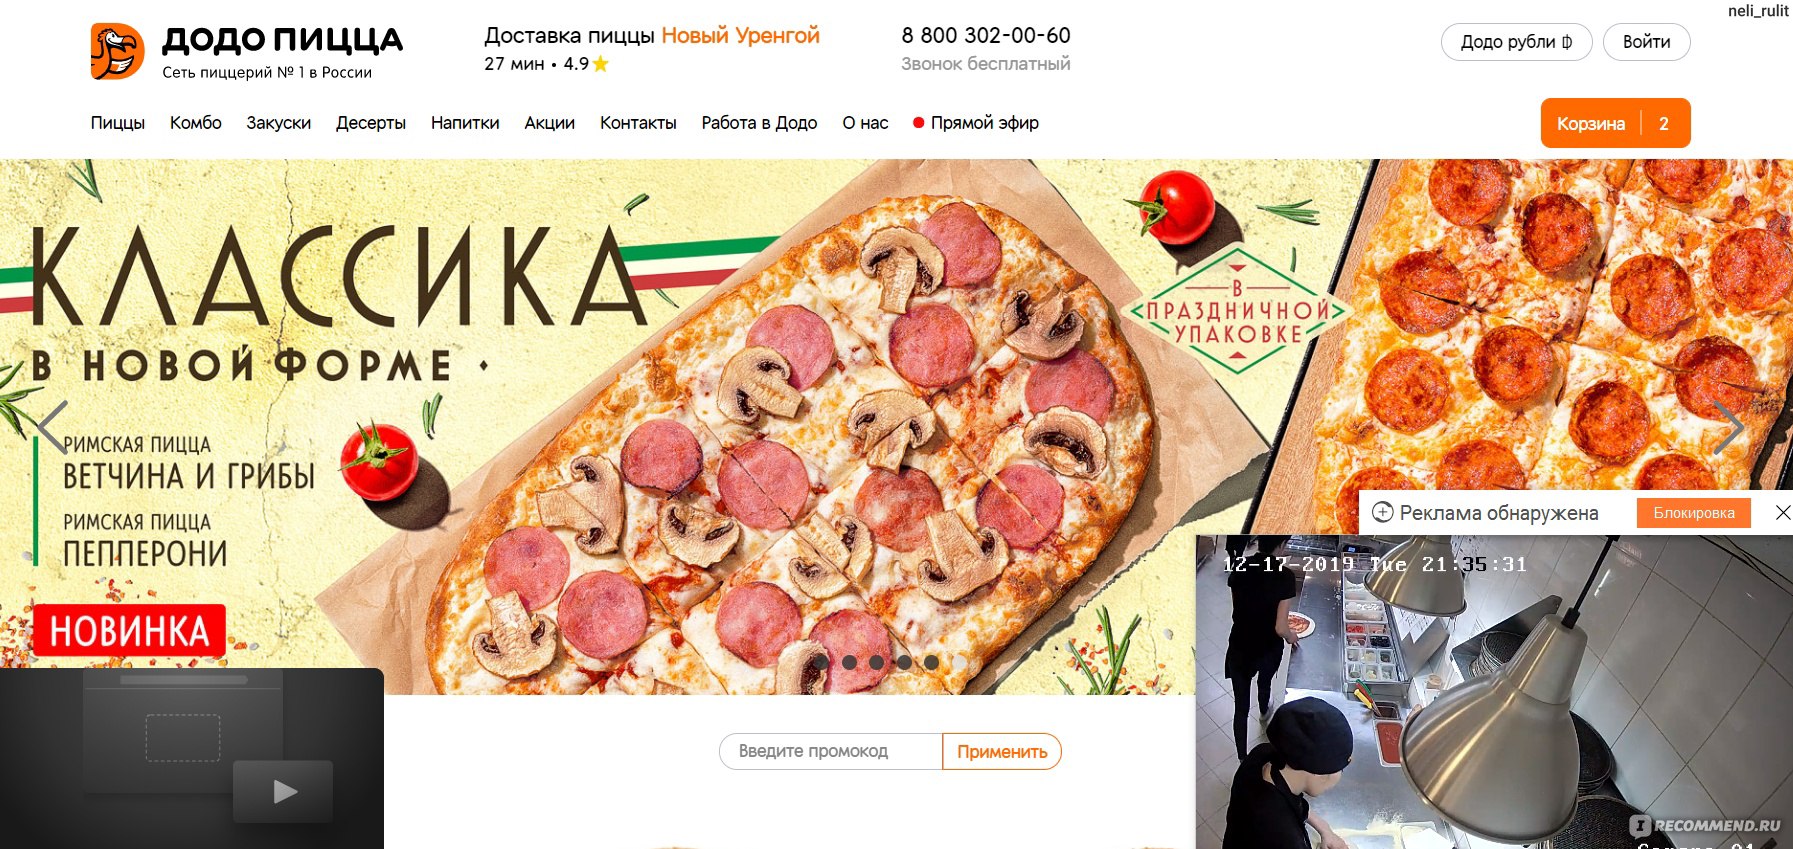 ассортимент додо пицца москва цены фото 69